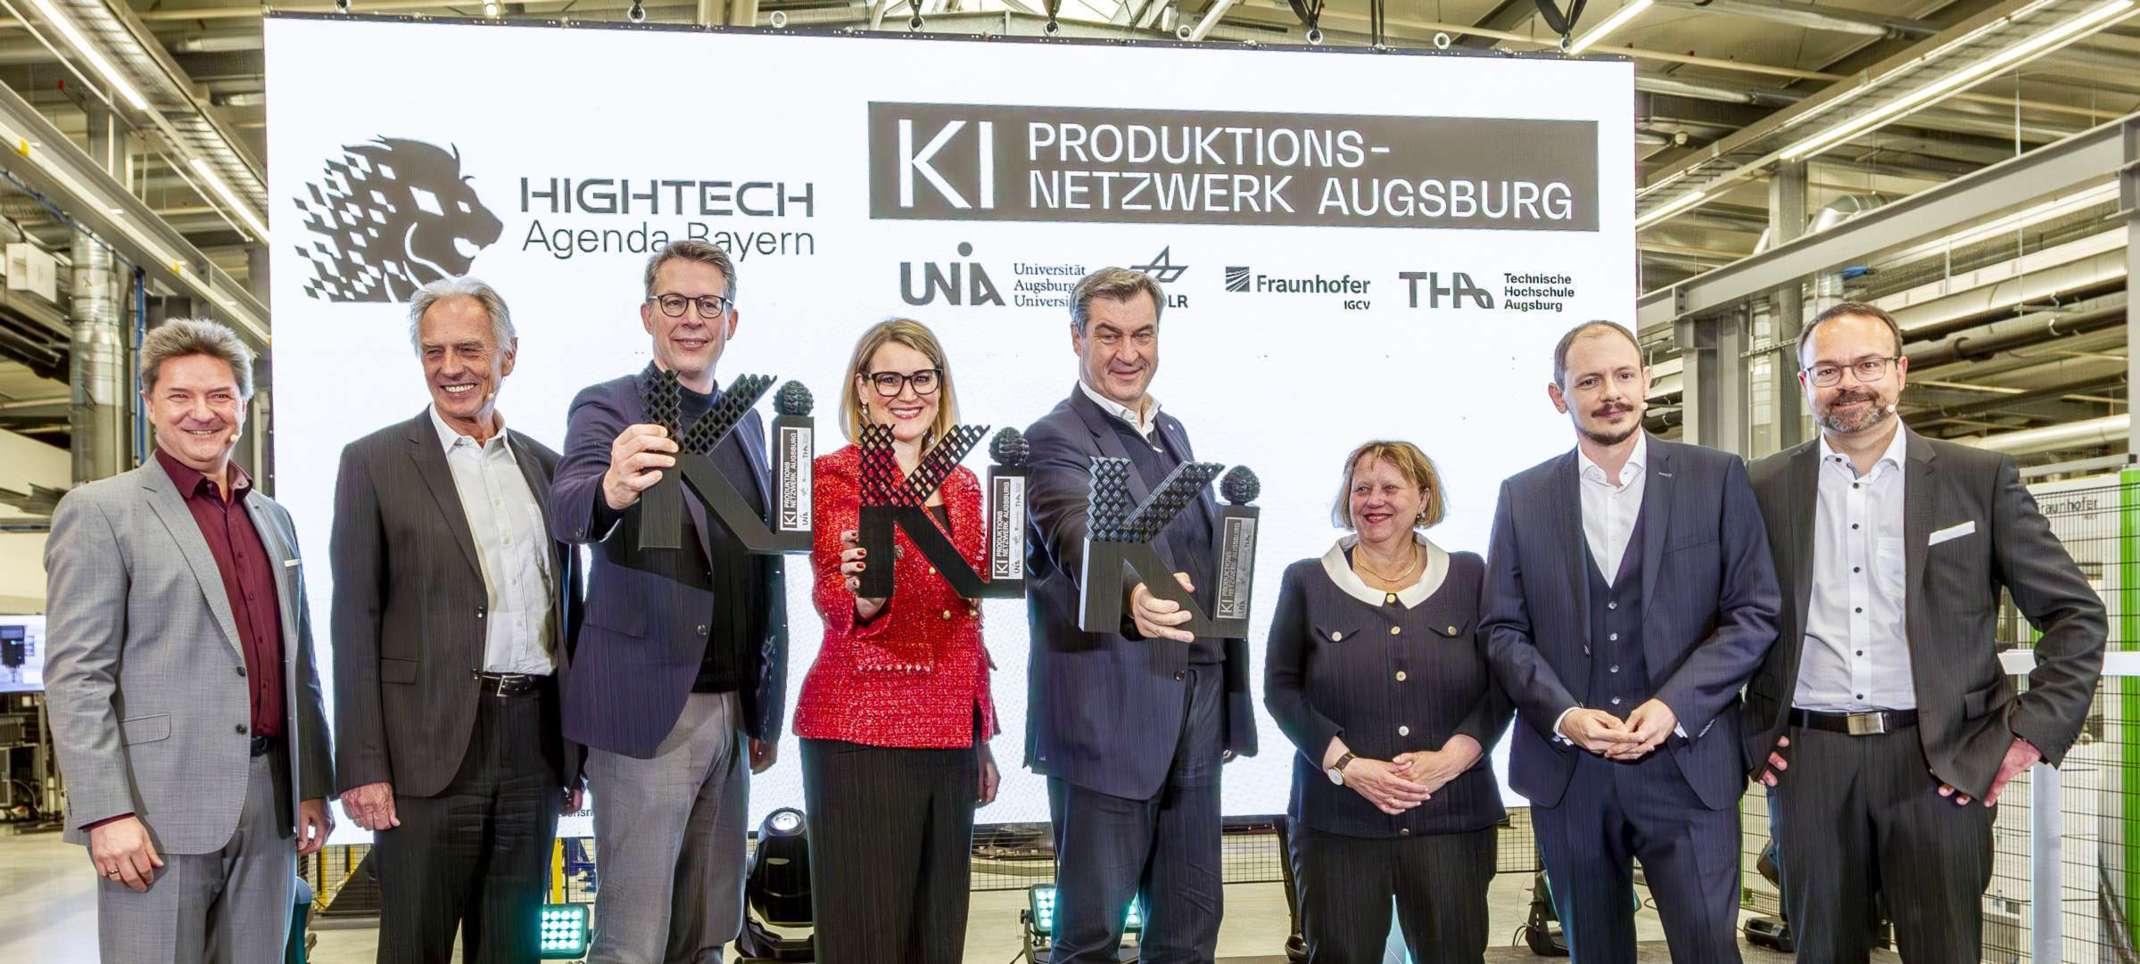 Die Leitung des KI-Produktionsnetzwerks Augsburg